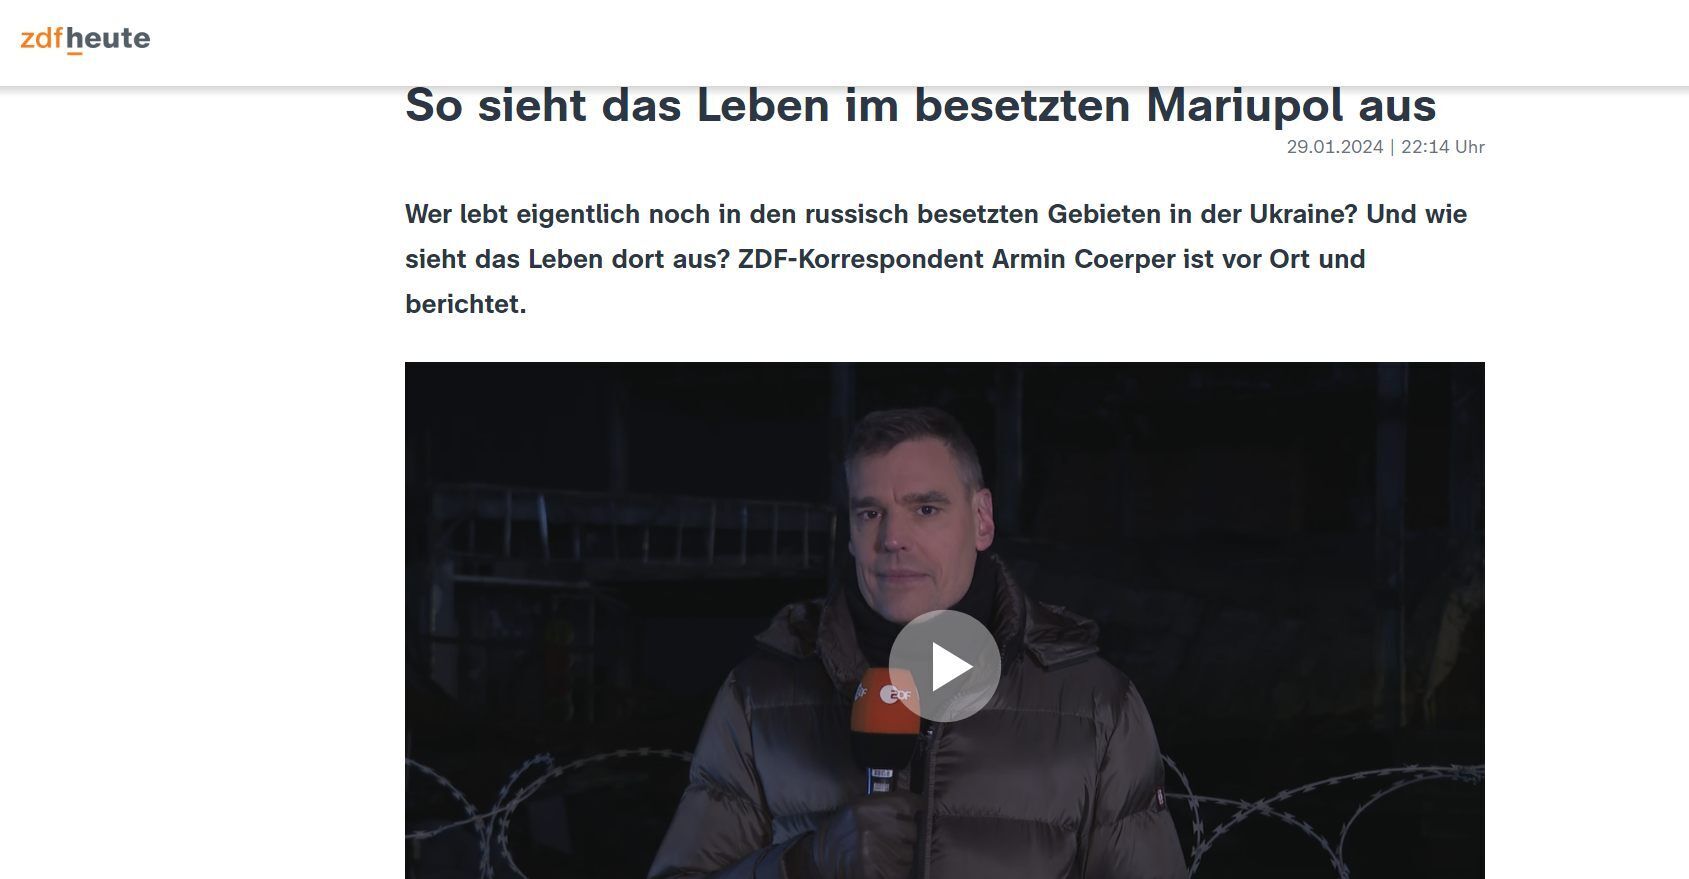 "Гроші не пахнуть": директор російського офісу німецького каналу ZDF засвітився в Маріуполі, розгорівся скандал 